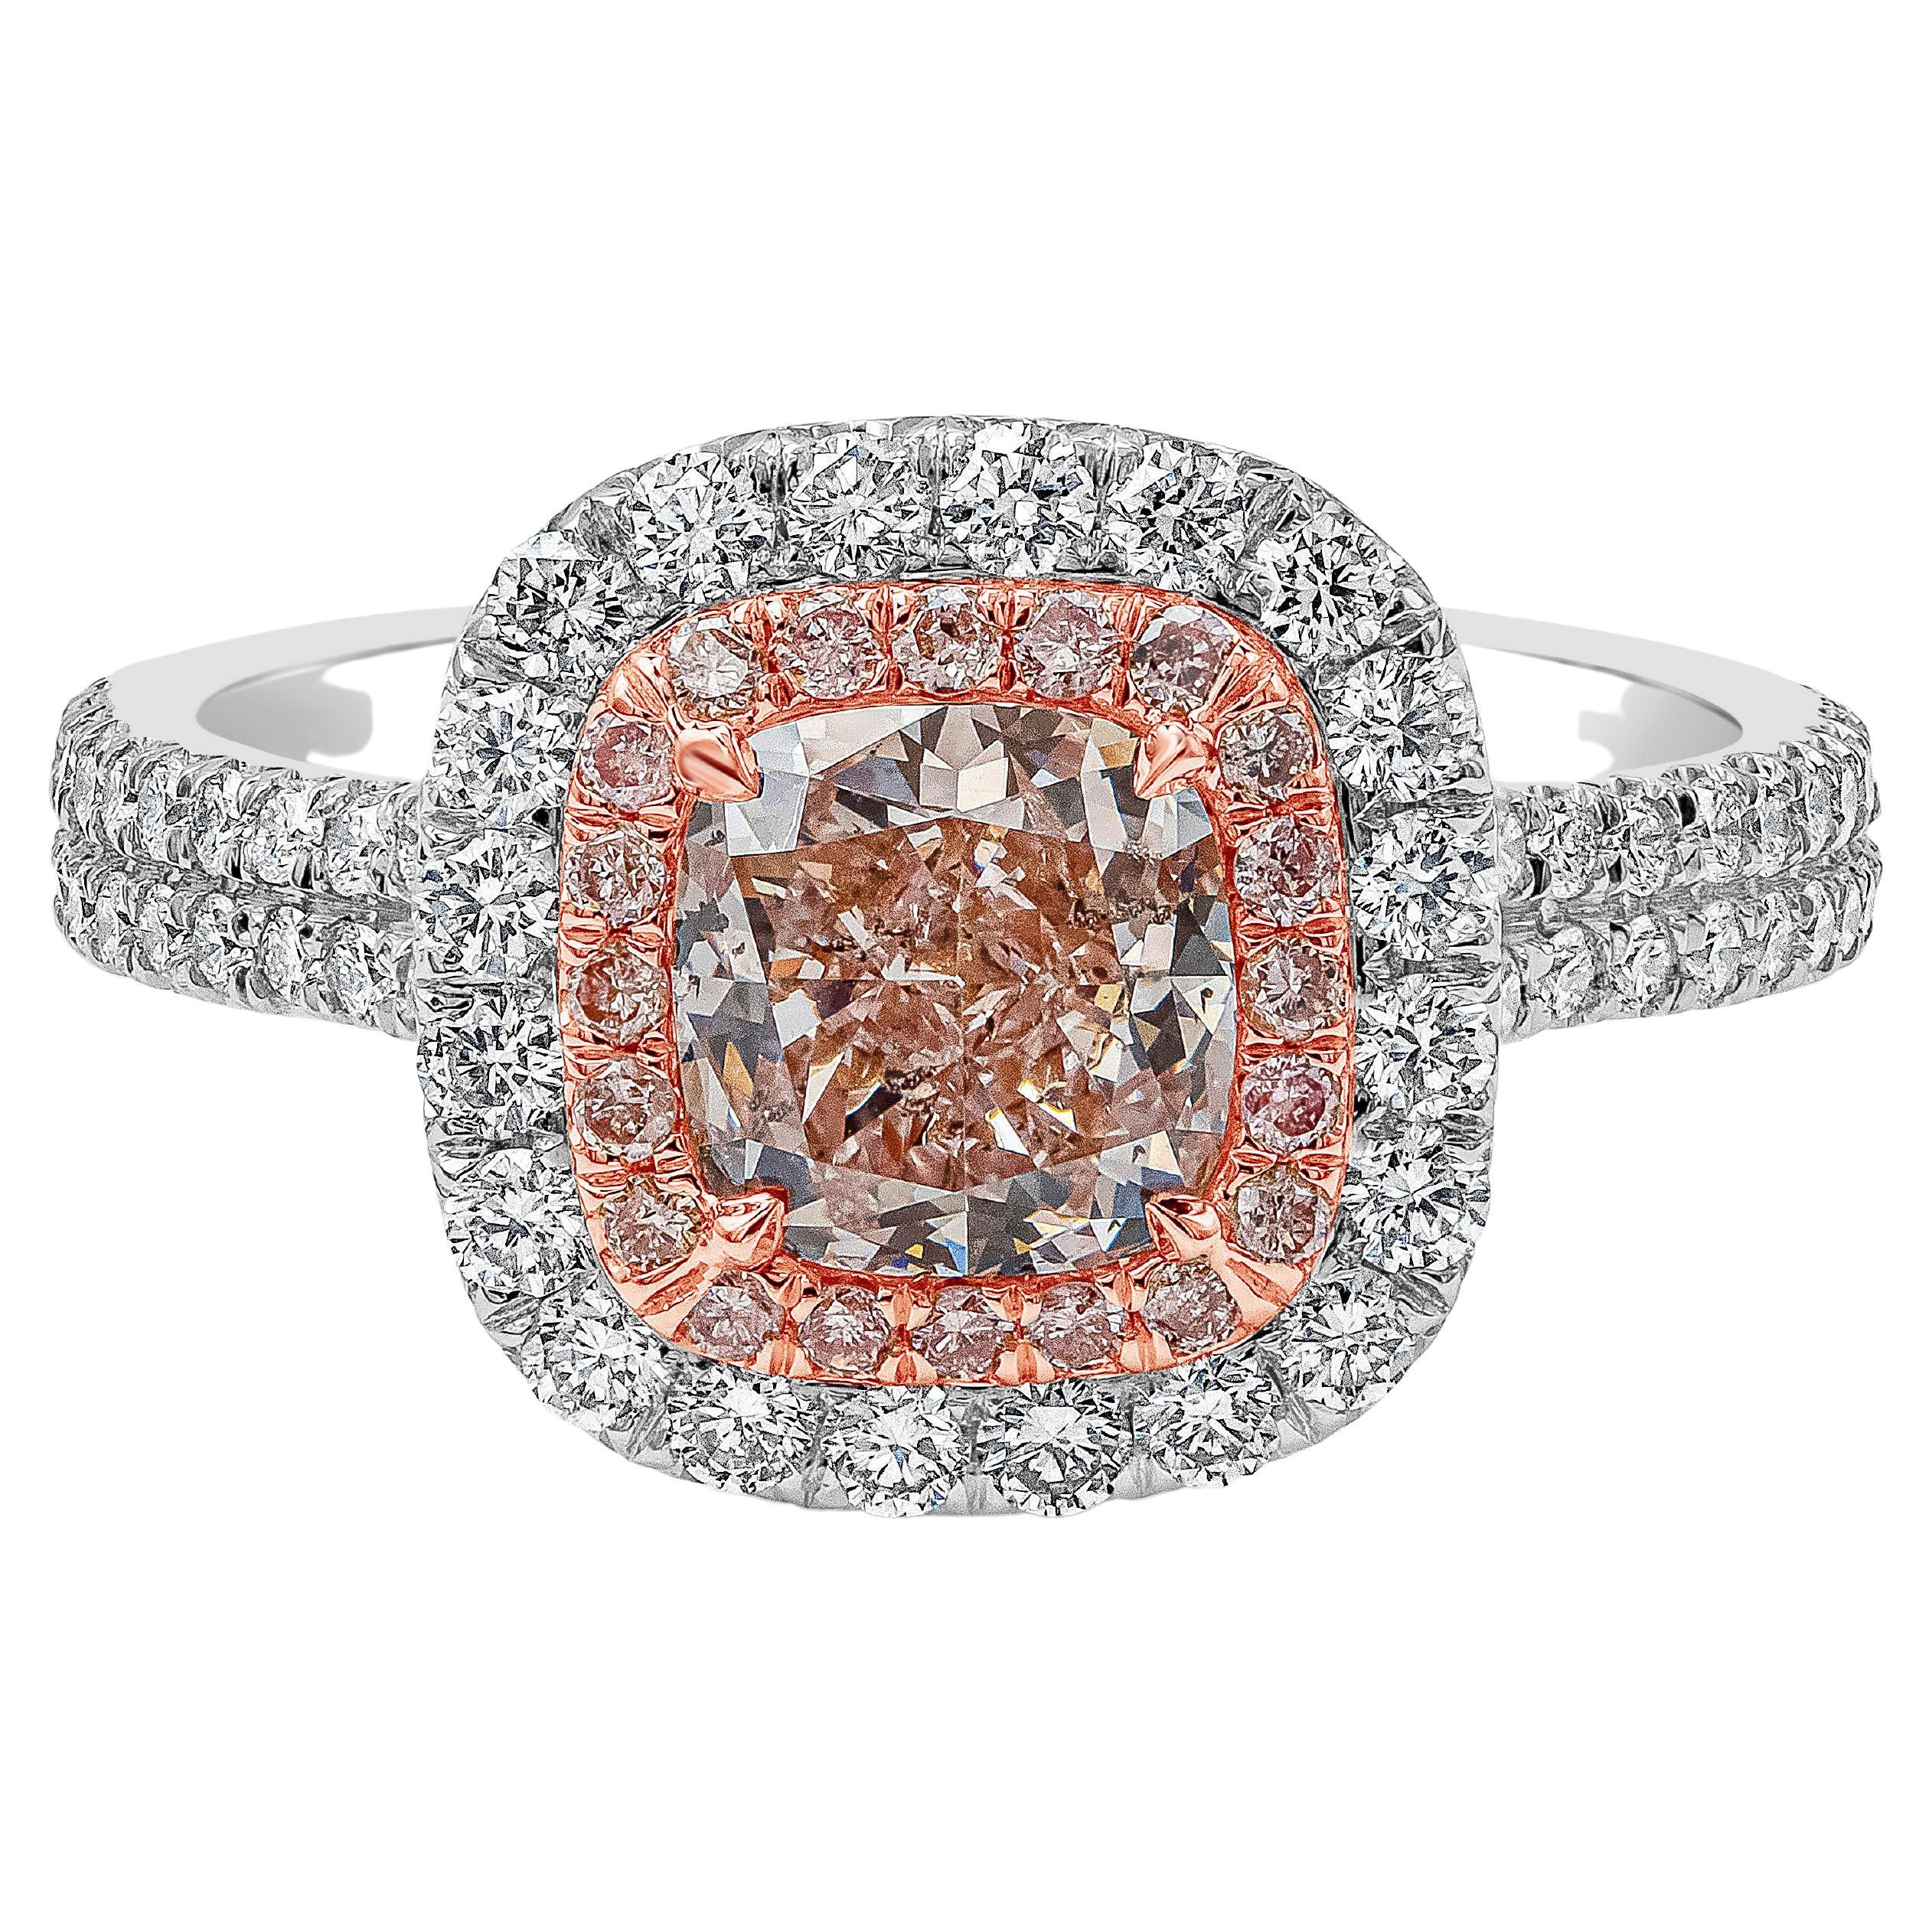 Bague de fiançailles certifiée GIA de 1,23 carat, taille coussin, diamant rose clair fantaisie